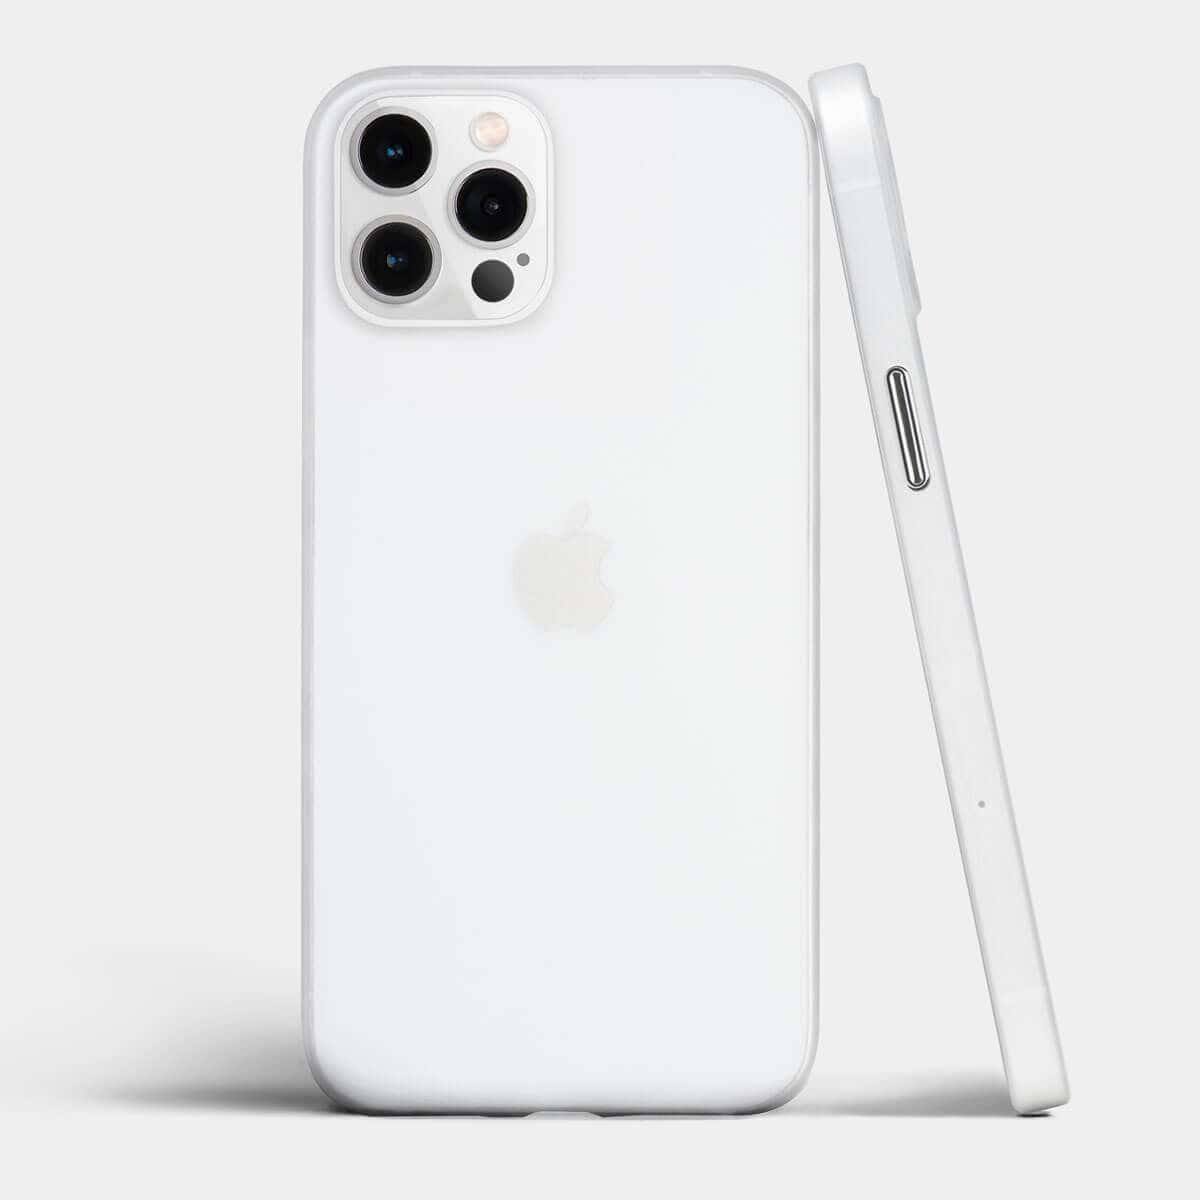 Dasbeeindruckende Design Des Iphone 12.